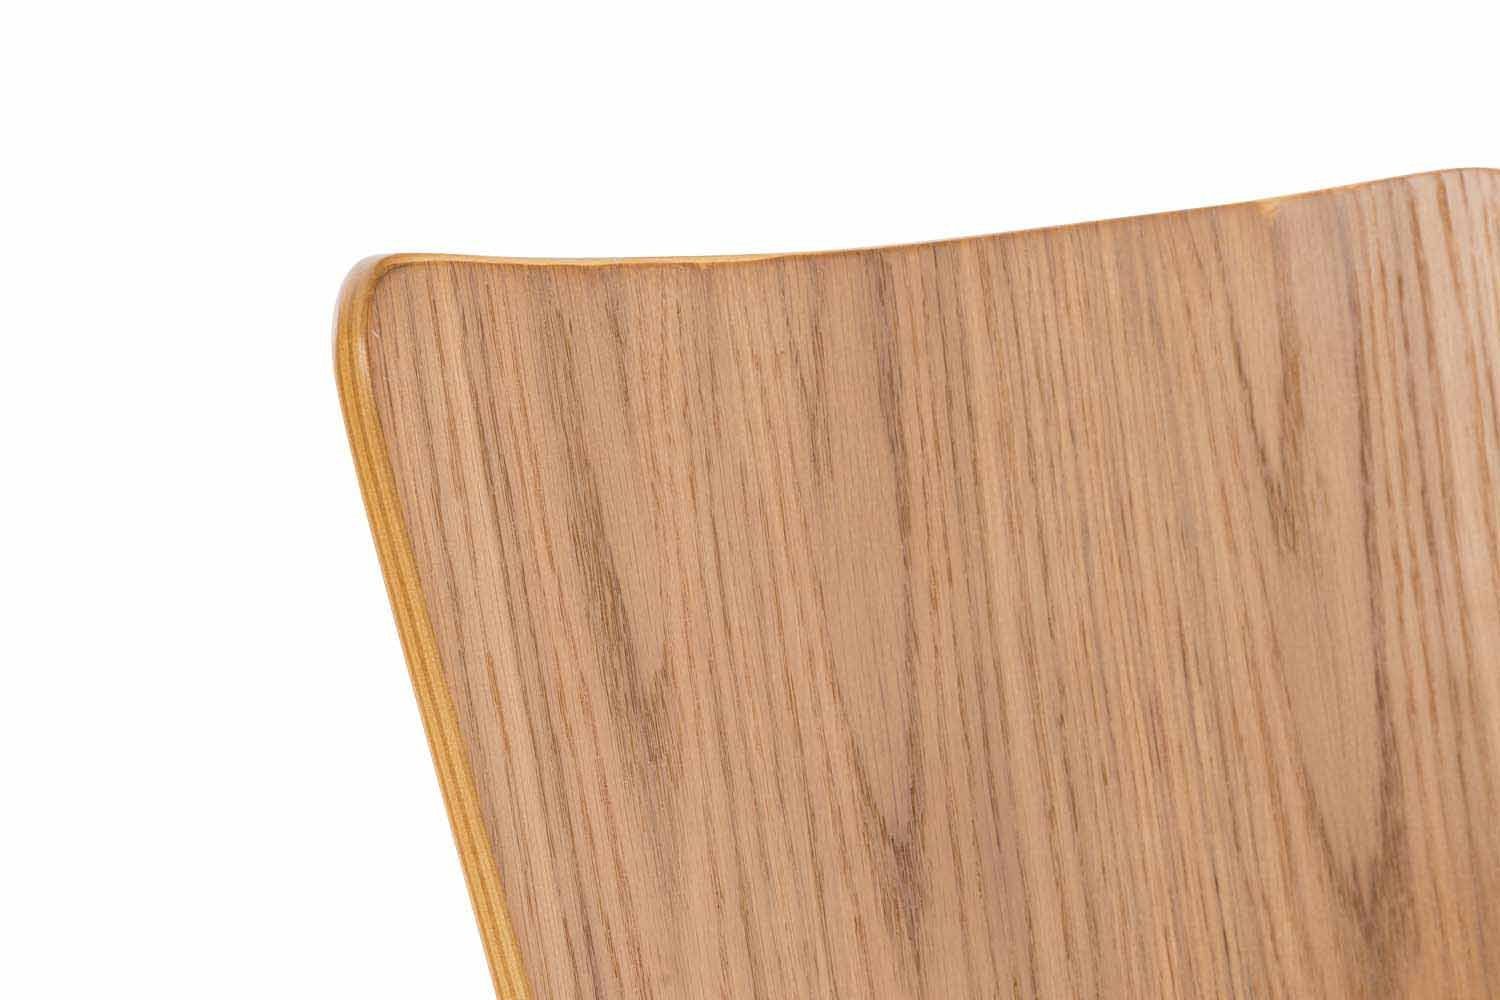 Besucherstuhl eiche Holzsitz Metall, geformter Aaron, CLP ergonomisch